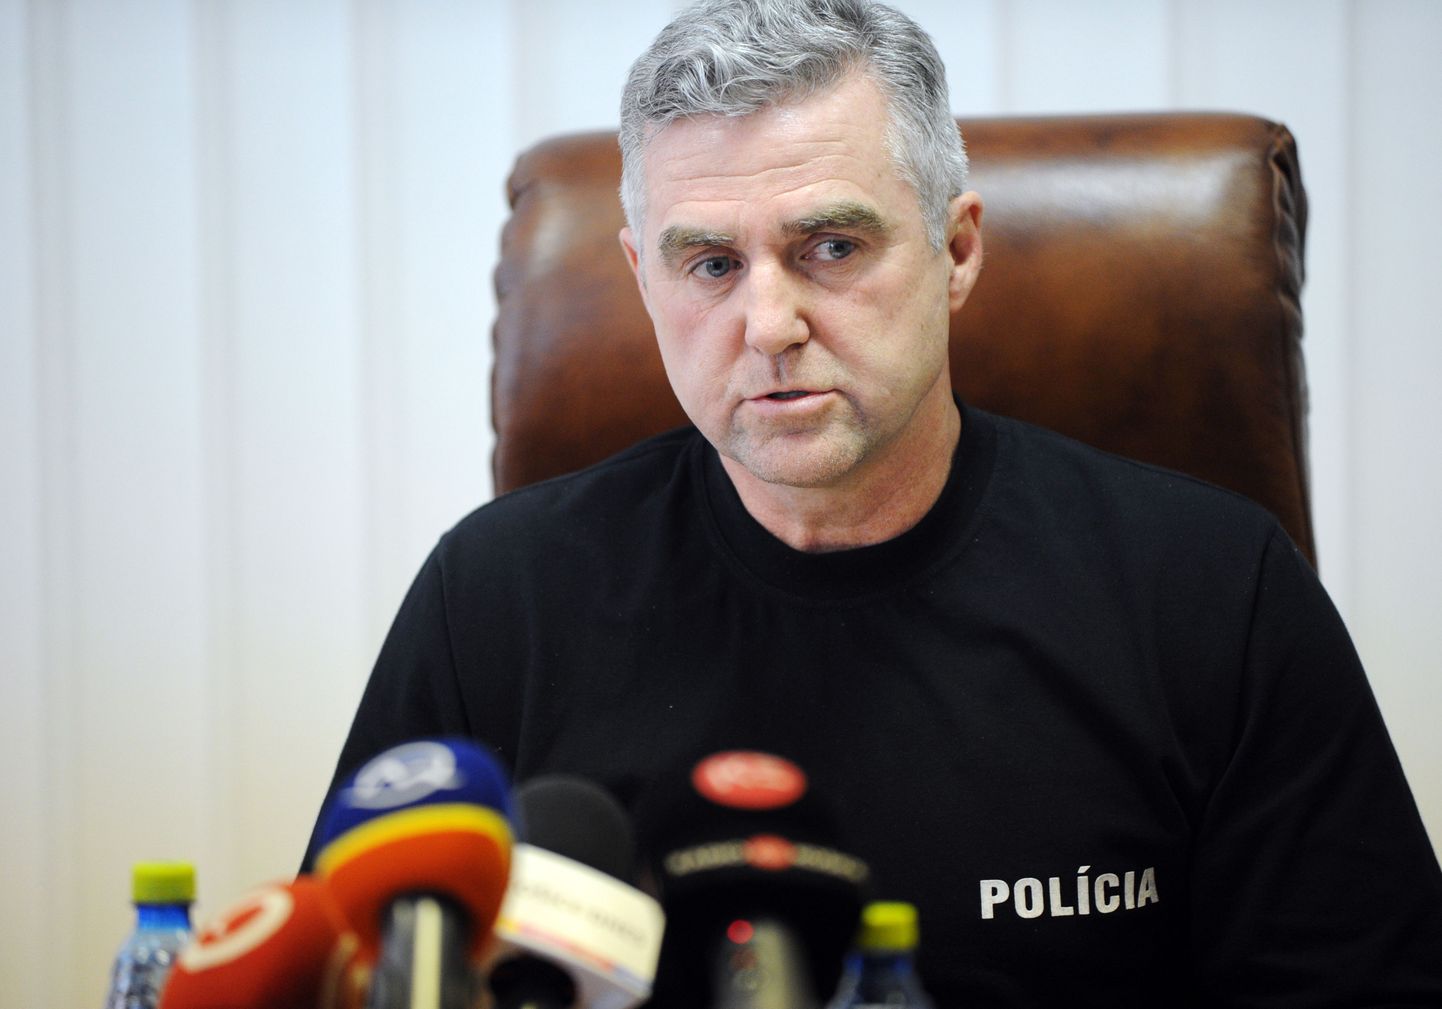 Eile vahi alla võetud Slovakkia politsei endine juht Tibor Gašpar astus tagasi 2018. aasta aprillis kaks kuud pärast ajakirjanik Ján Kuciaki mõrva.